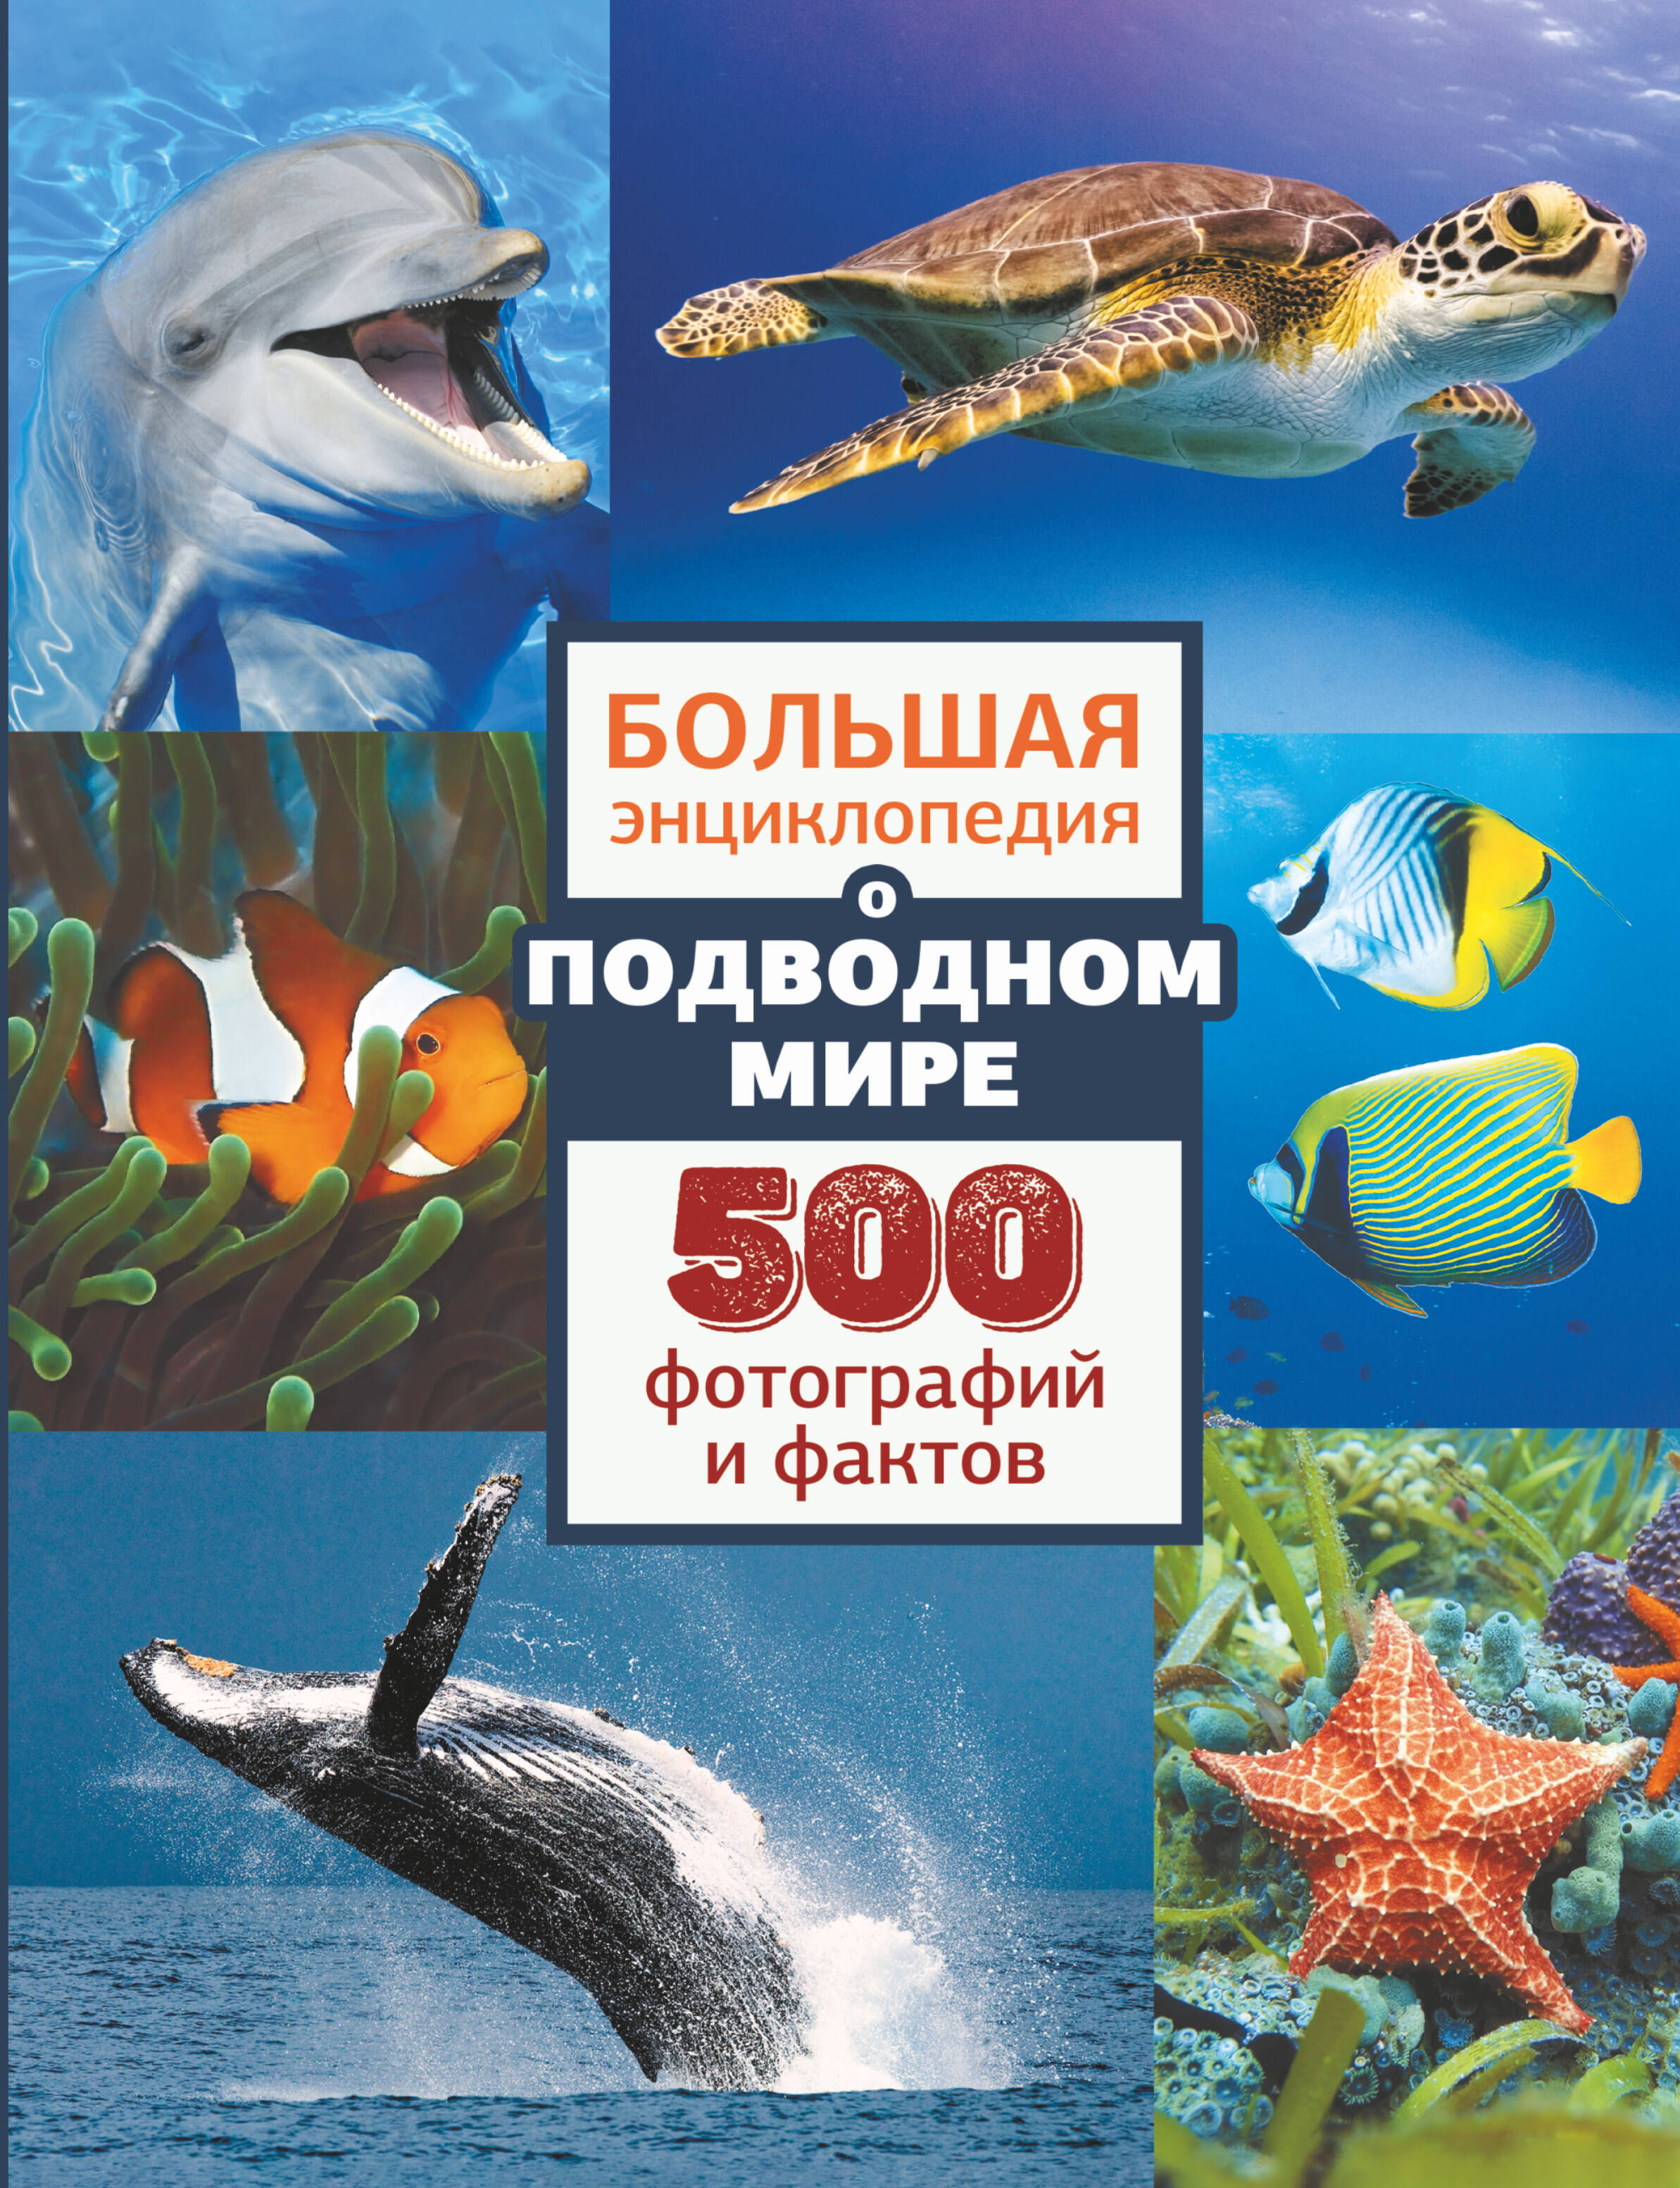  Большая энциклопедия подводном мире. 500 фотографий и фактов - страница 0